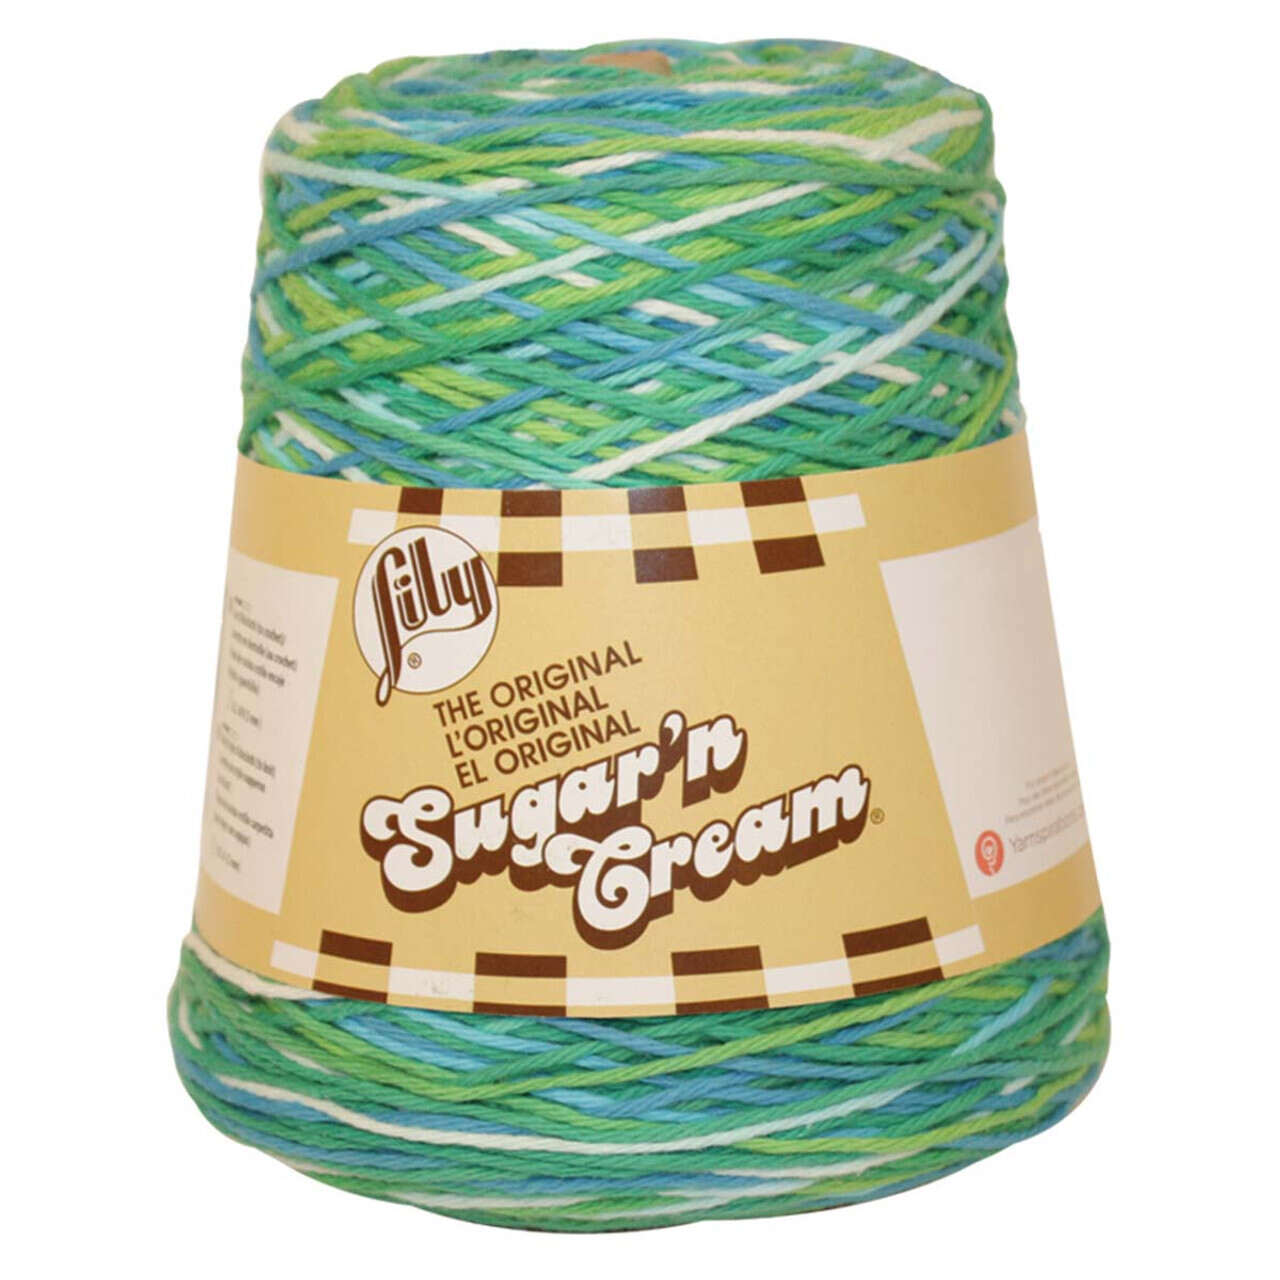 Lily Sugar and Cream Yarn